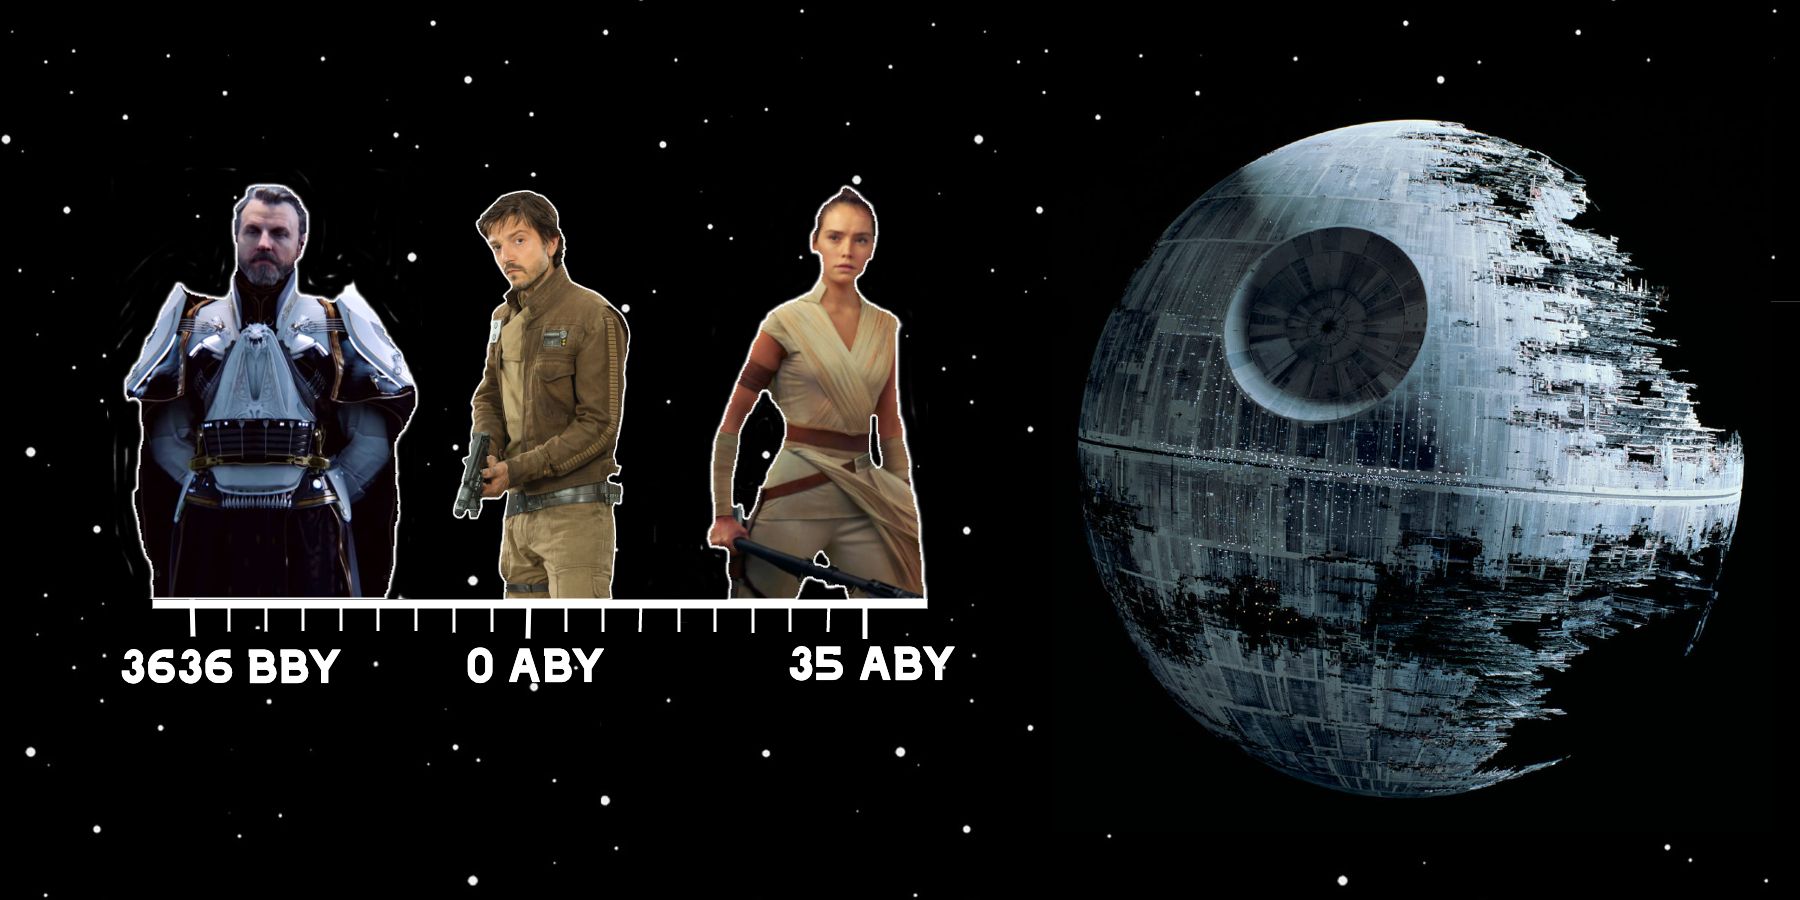 Star Wars Bby And Aby Calendar Eras Make No Sense